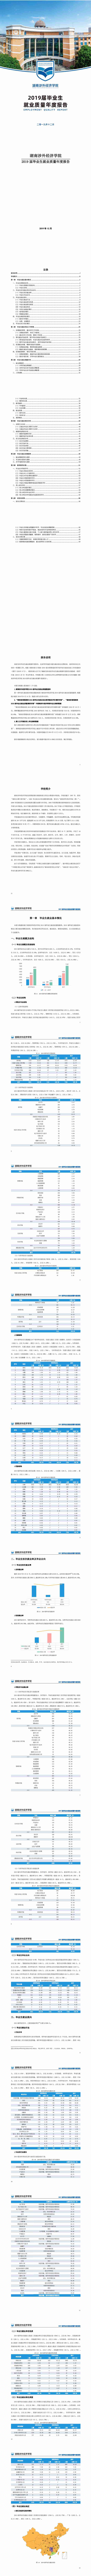 湖南涉外经济学院2019届毕业生就业质量年度报告0103(1)_0.jpg